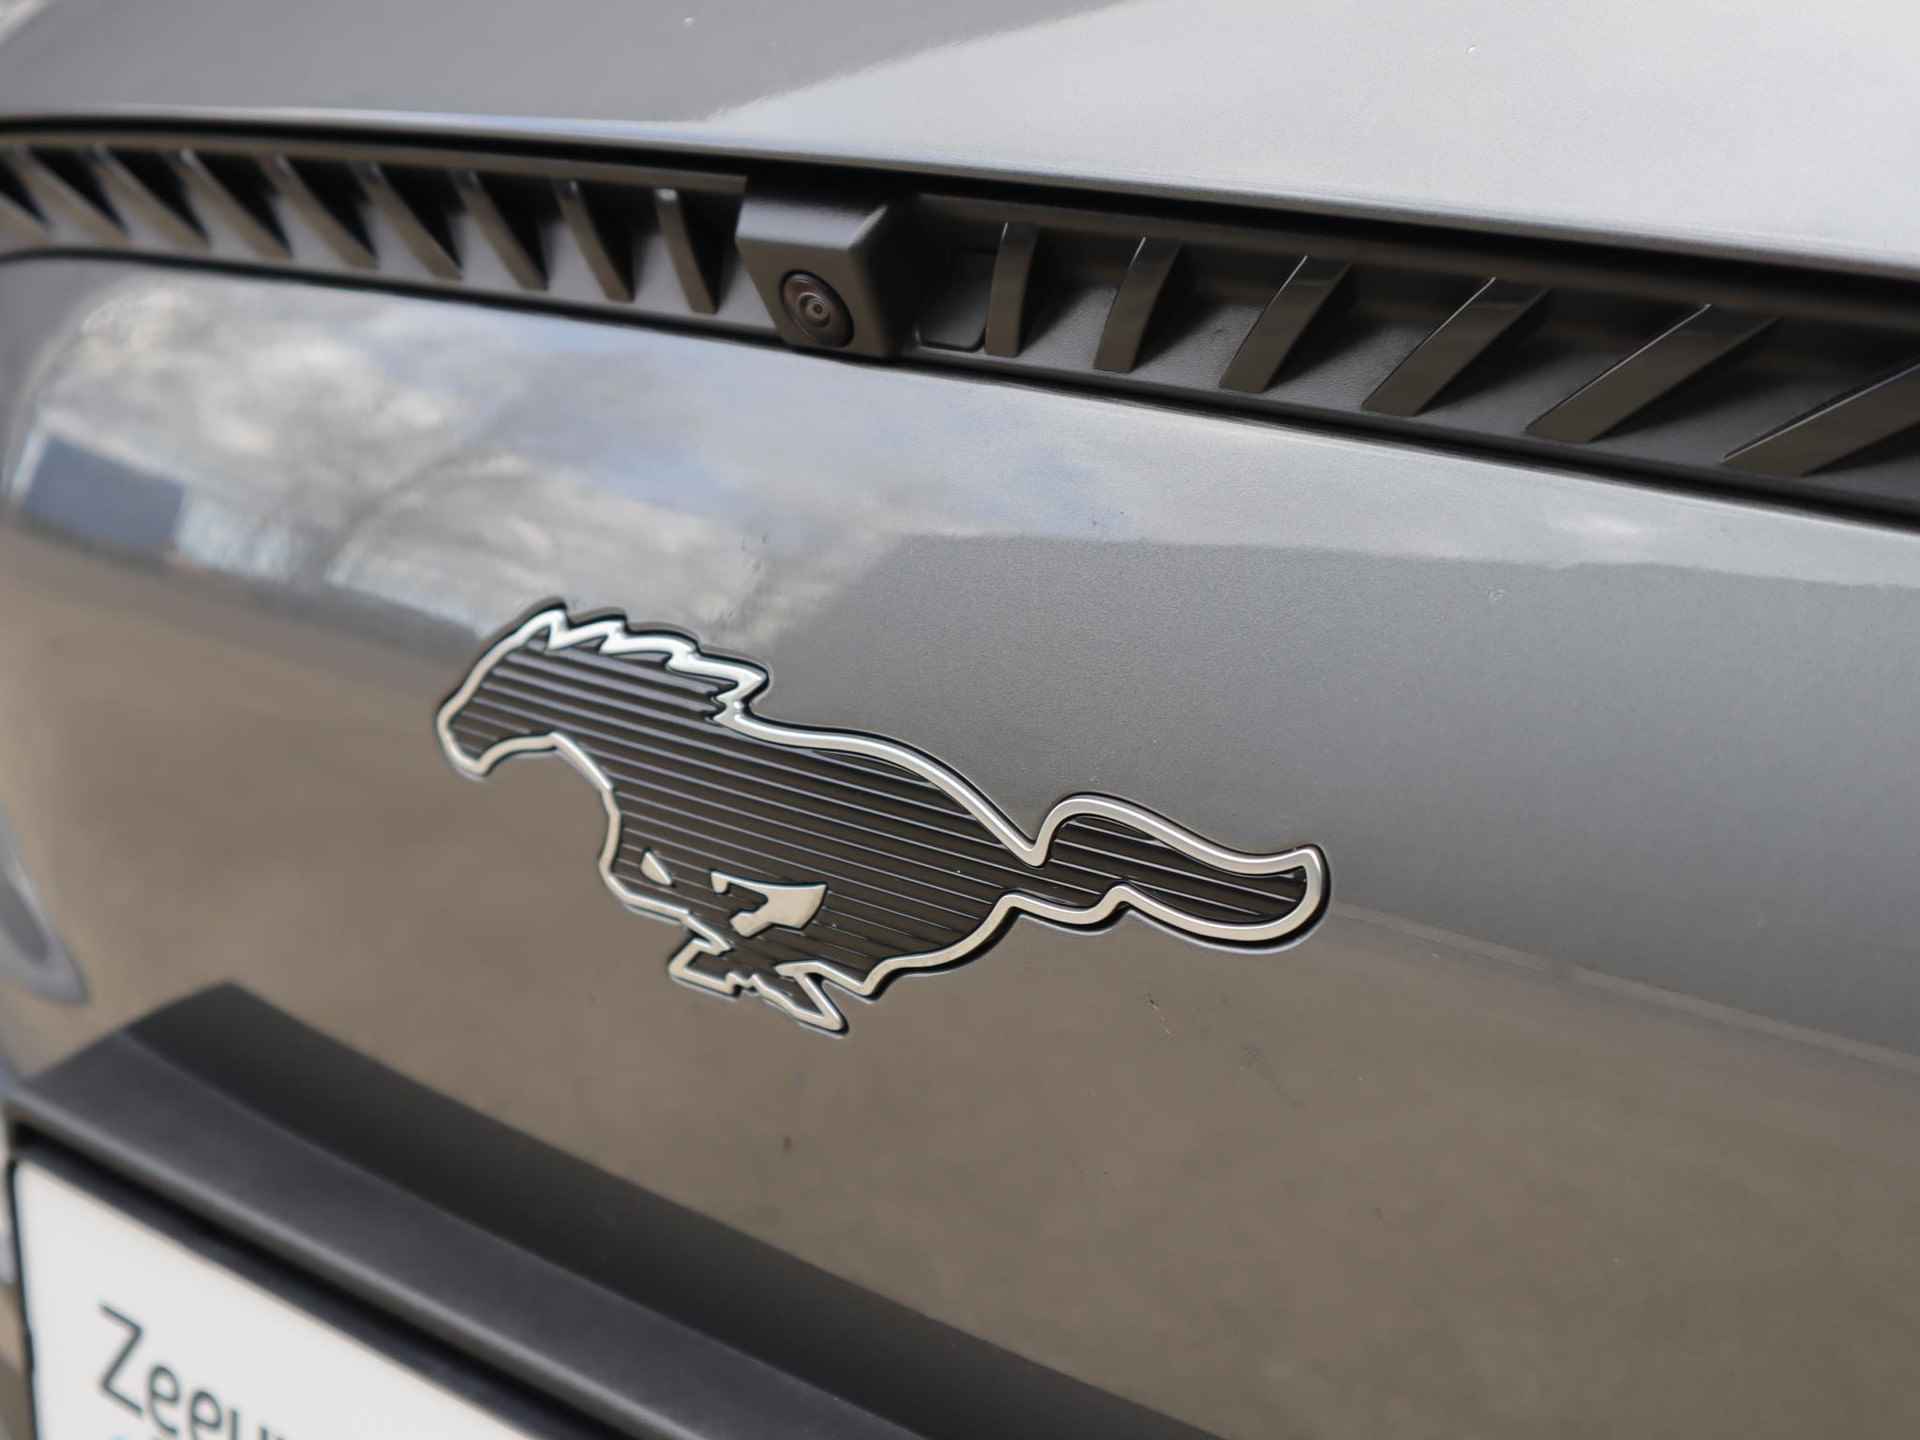 Ford Mustang Mach-E 98kWh Extended RWD 294pk | 12% bijtelling | Glazen dak | Technology + pakket | B&O Audio | Adaptieve cruise control | 18inch lichtmetalen velgen | Stoel- stuur en voorruitverwarming - 7/60